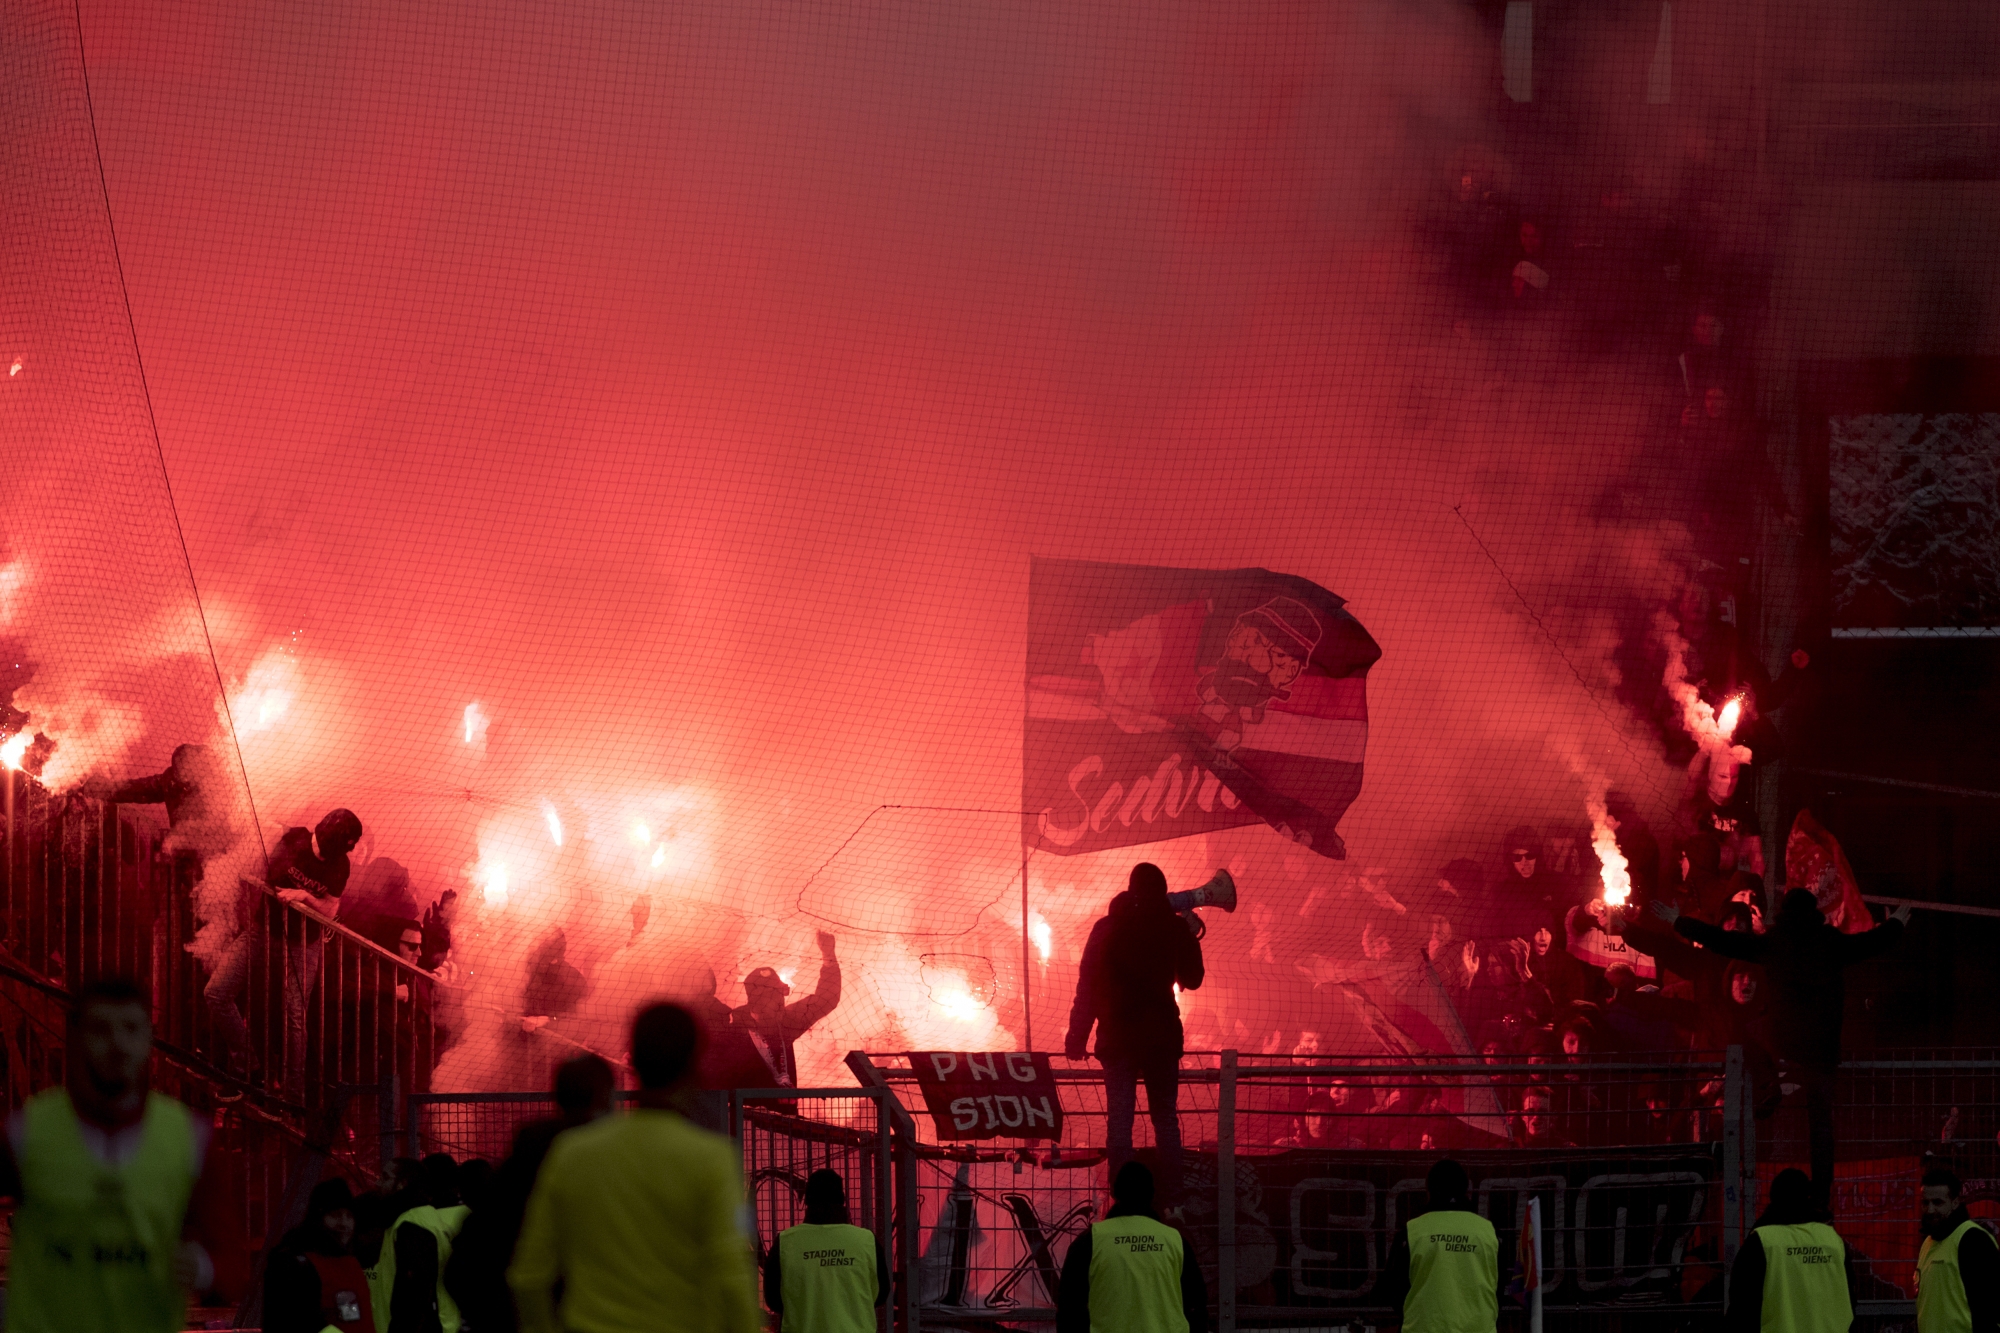 Le pétard avait explosé le 5 mars 2017 au bas du gradin nord du stade de Tourbillon, près de supporters du FC Sion. 